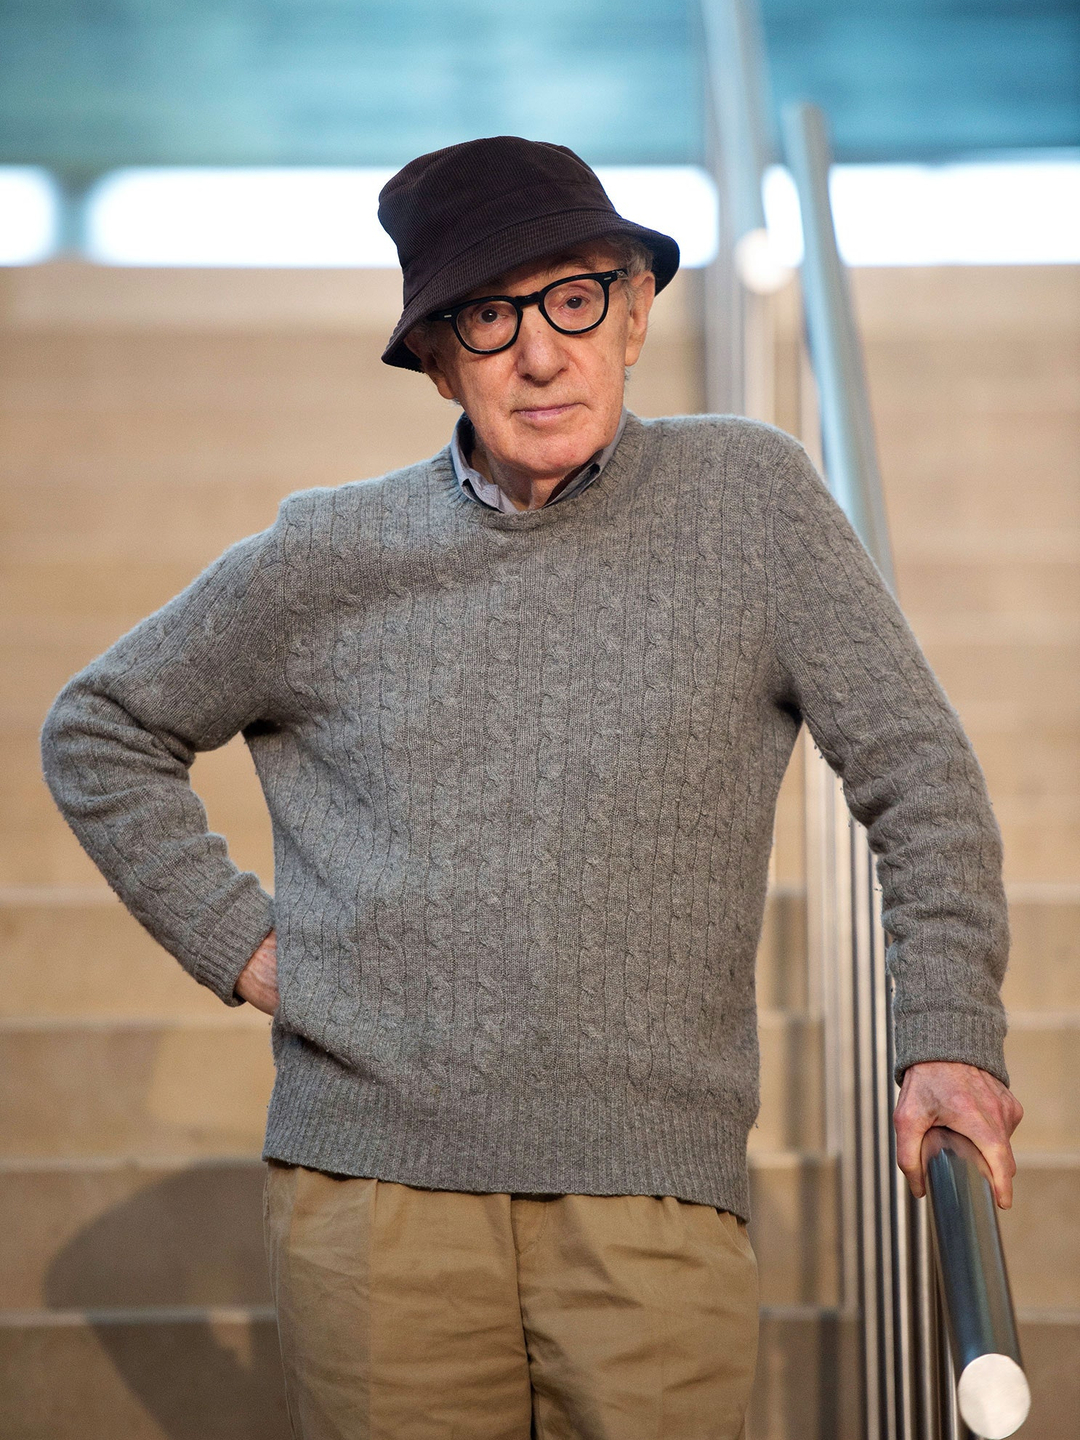 Woody Allen appearance